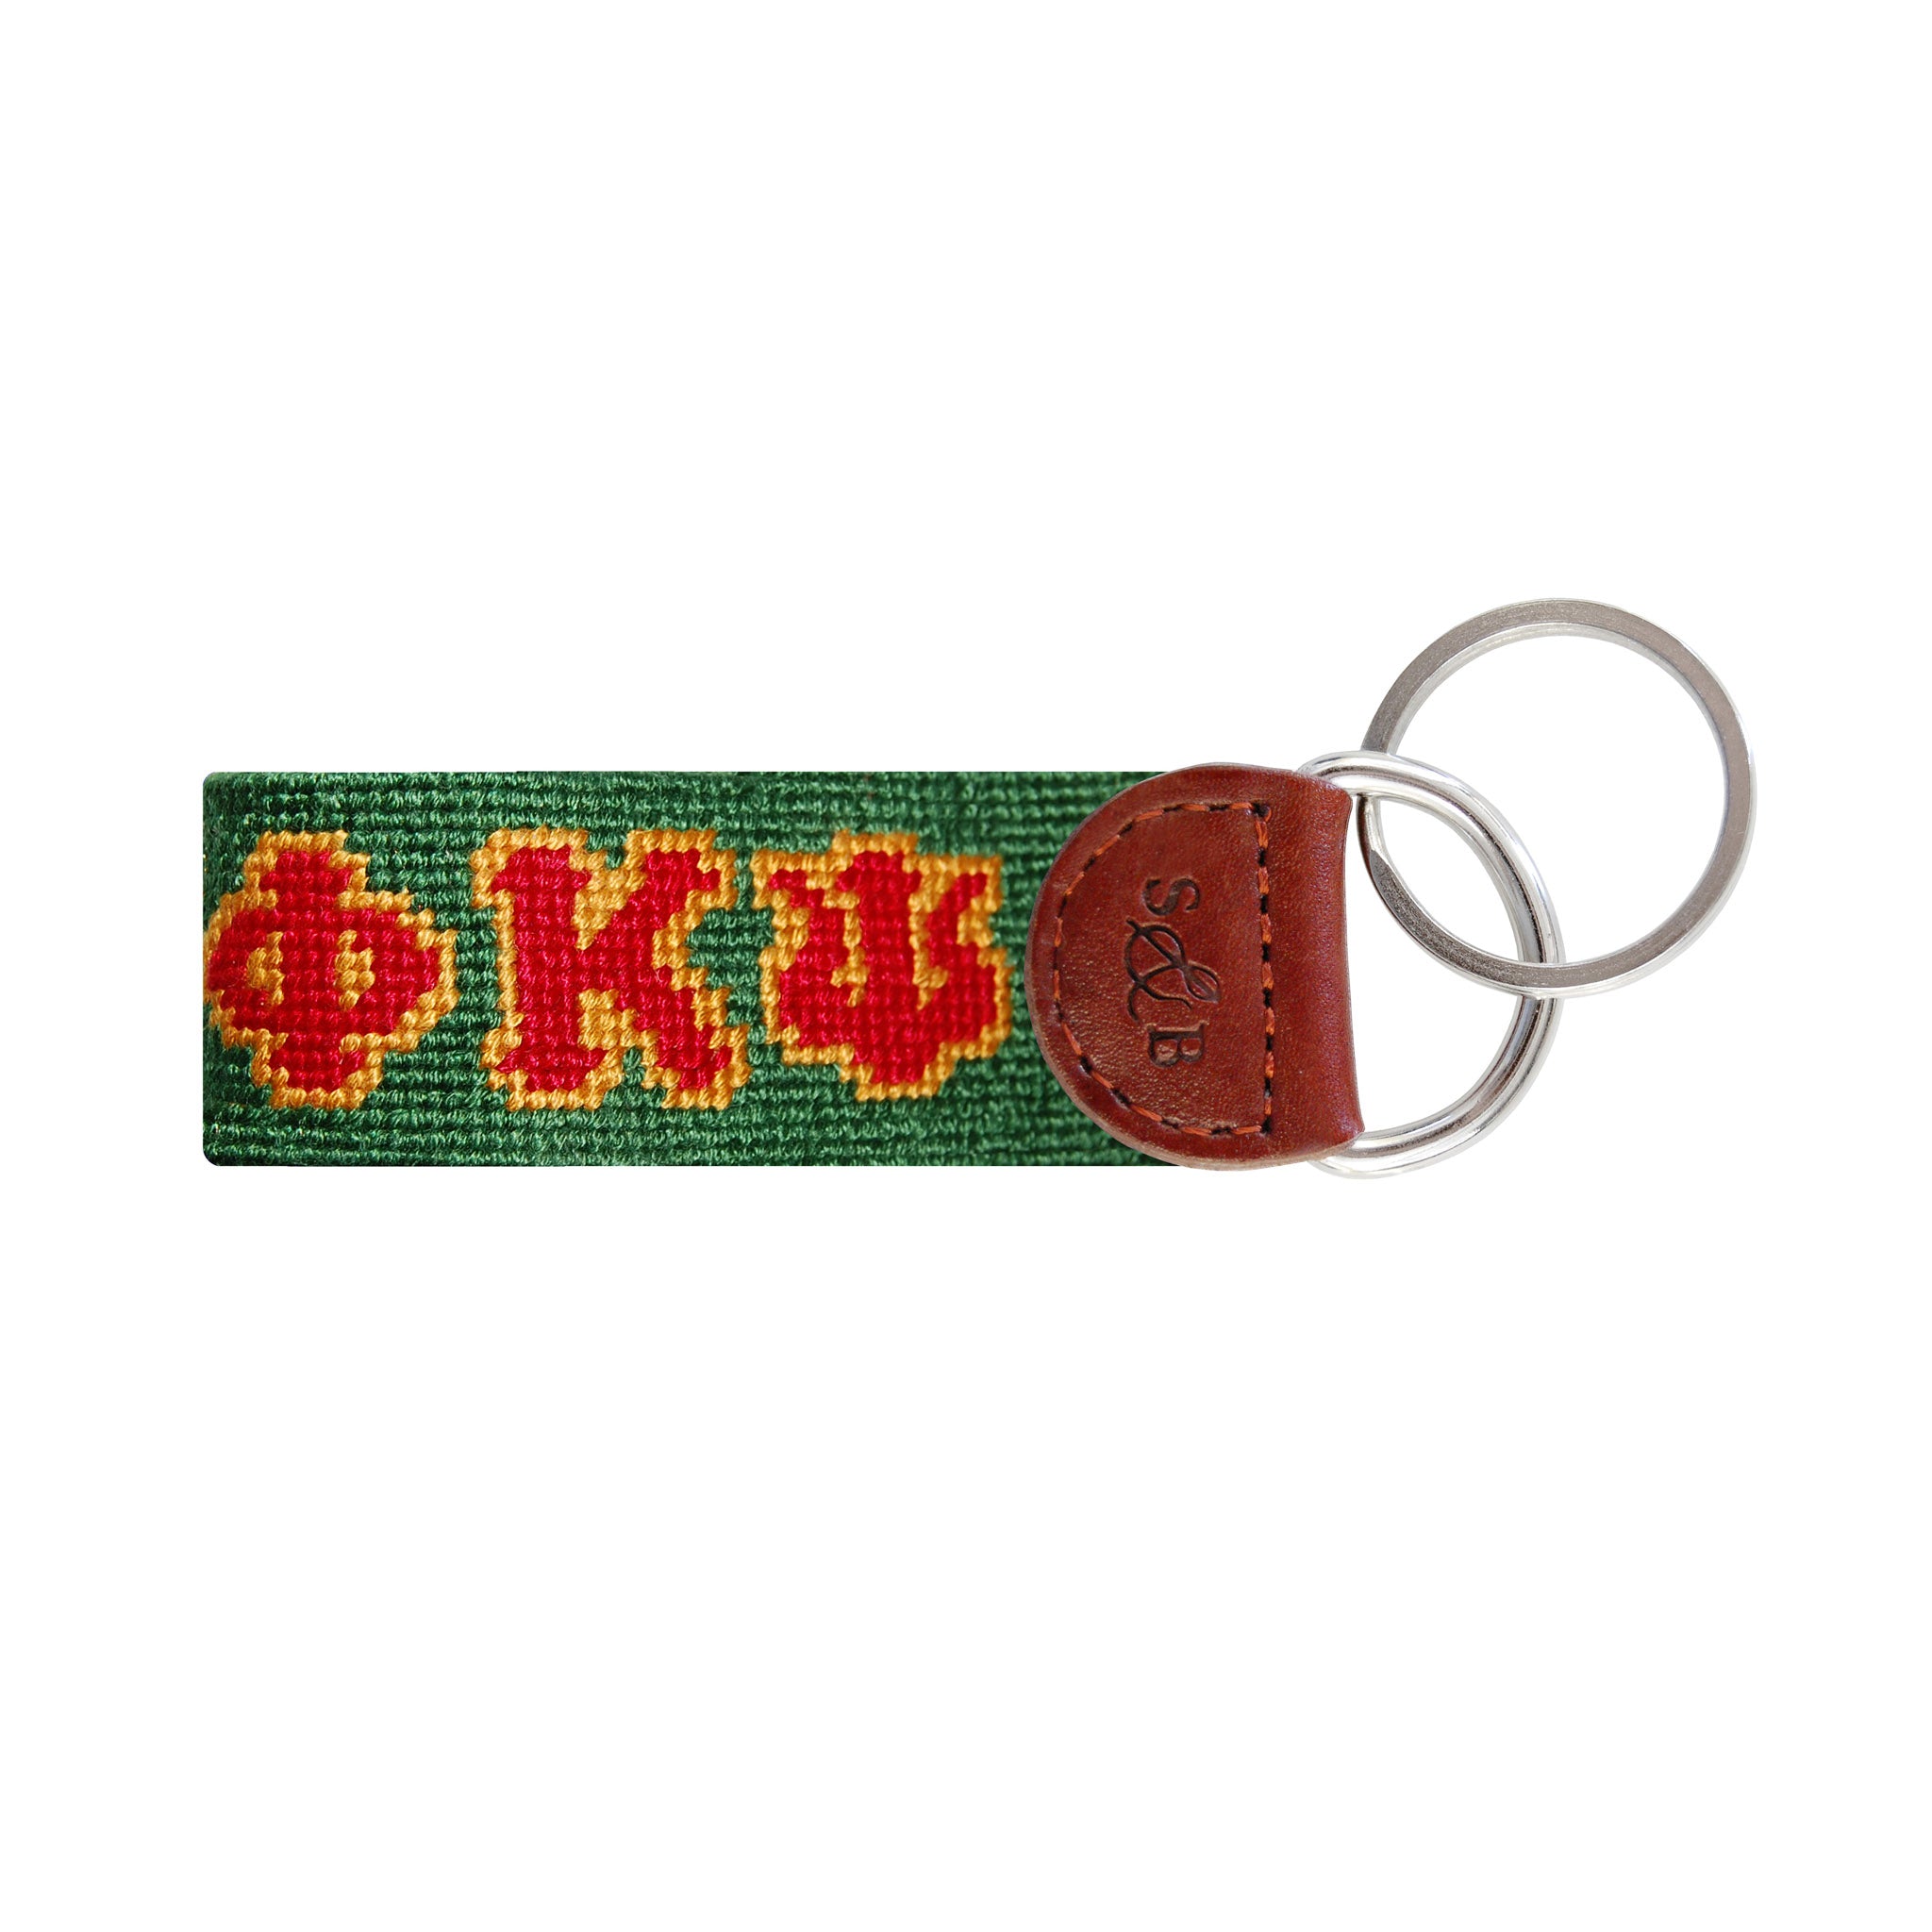 Phi Kappa Psi Key Fob